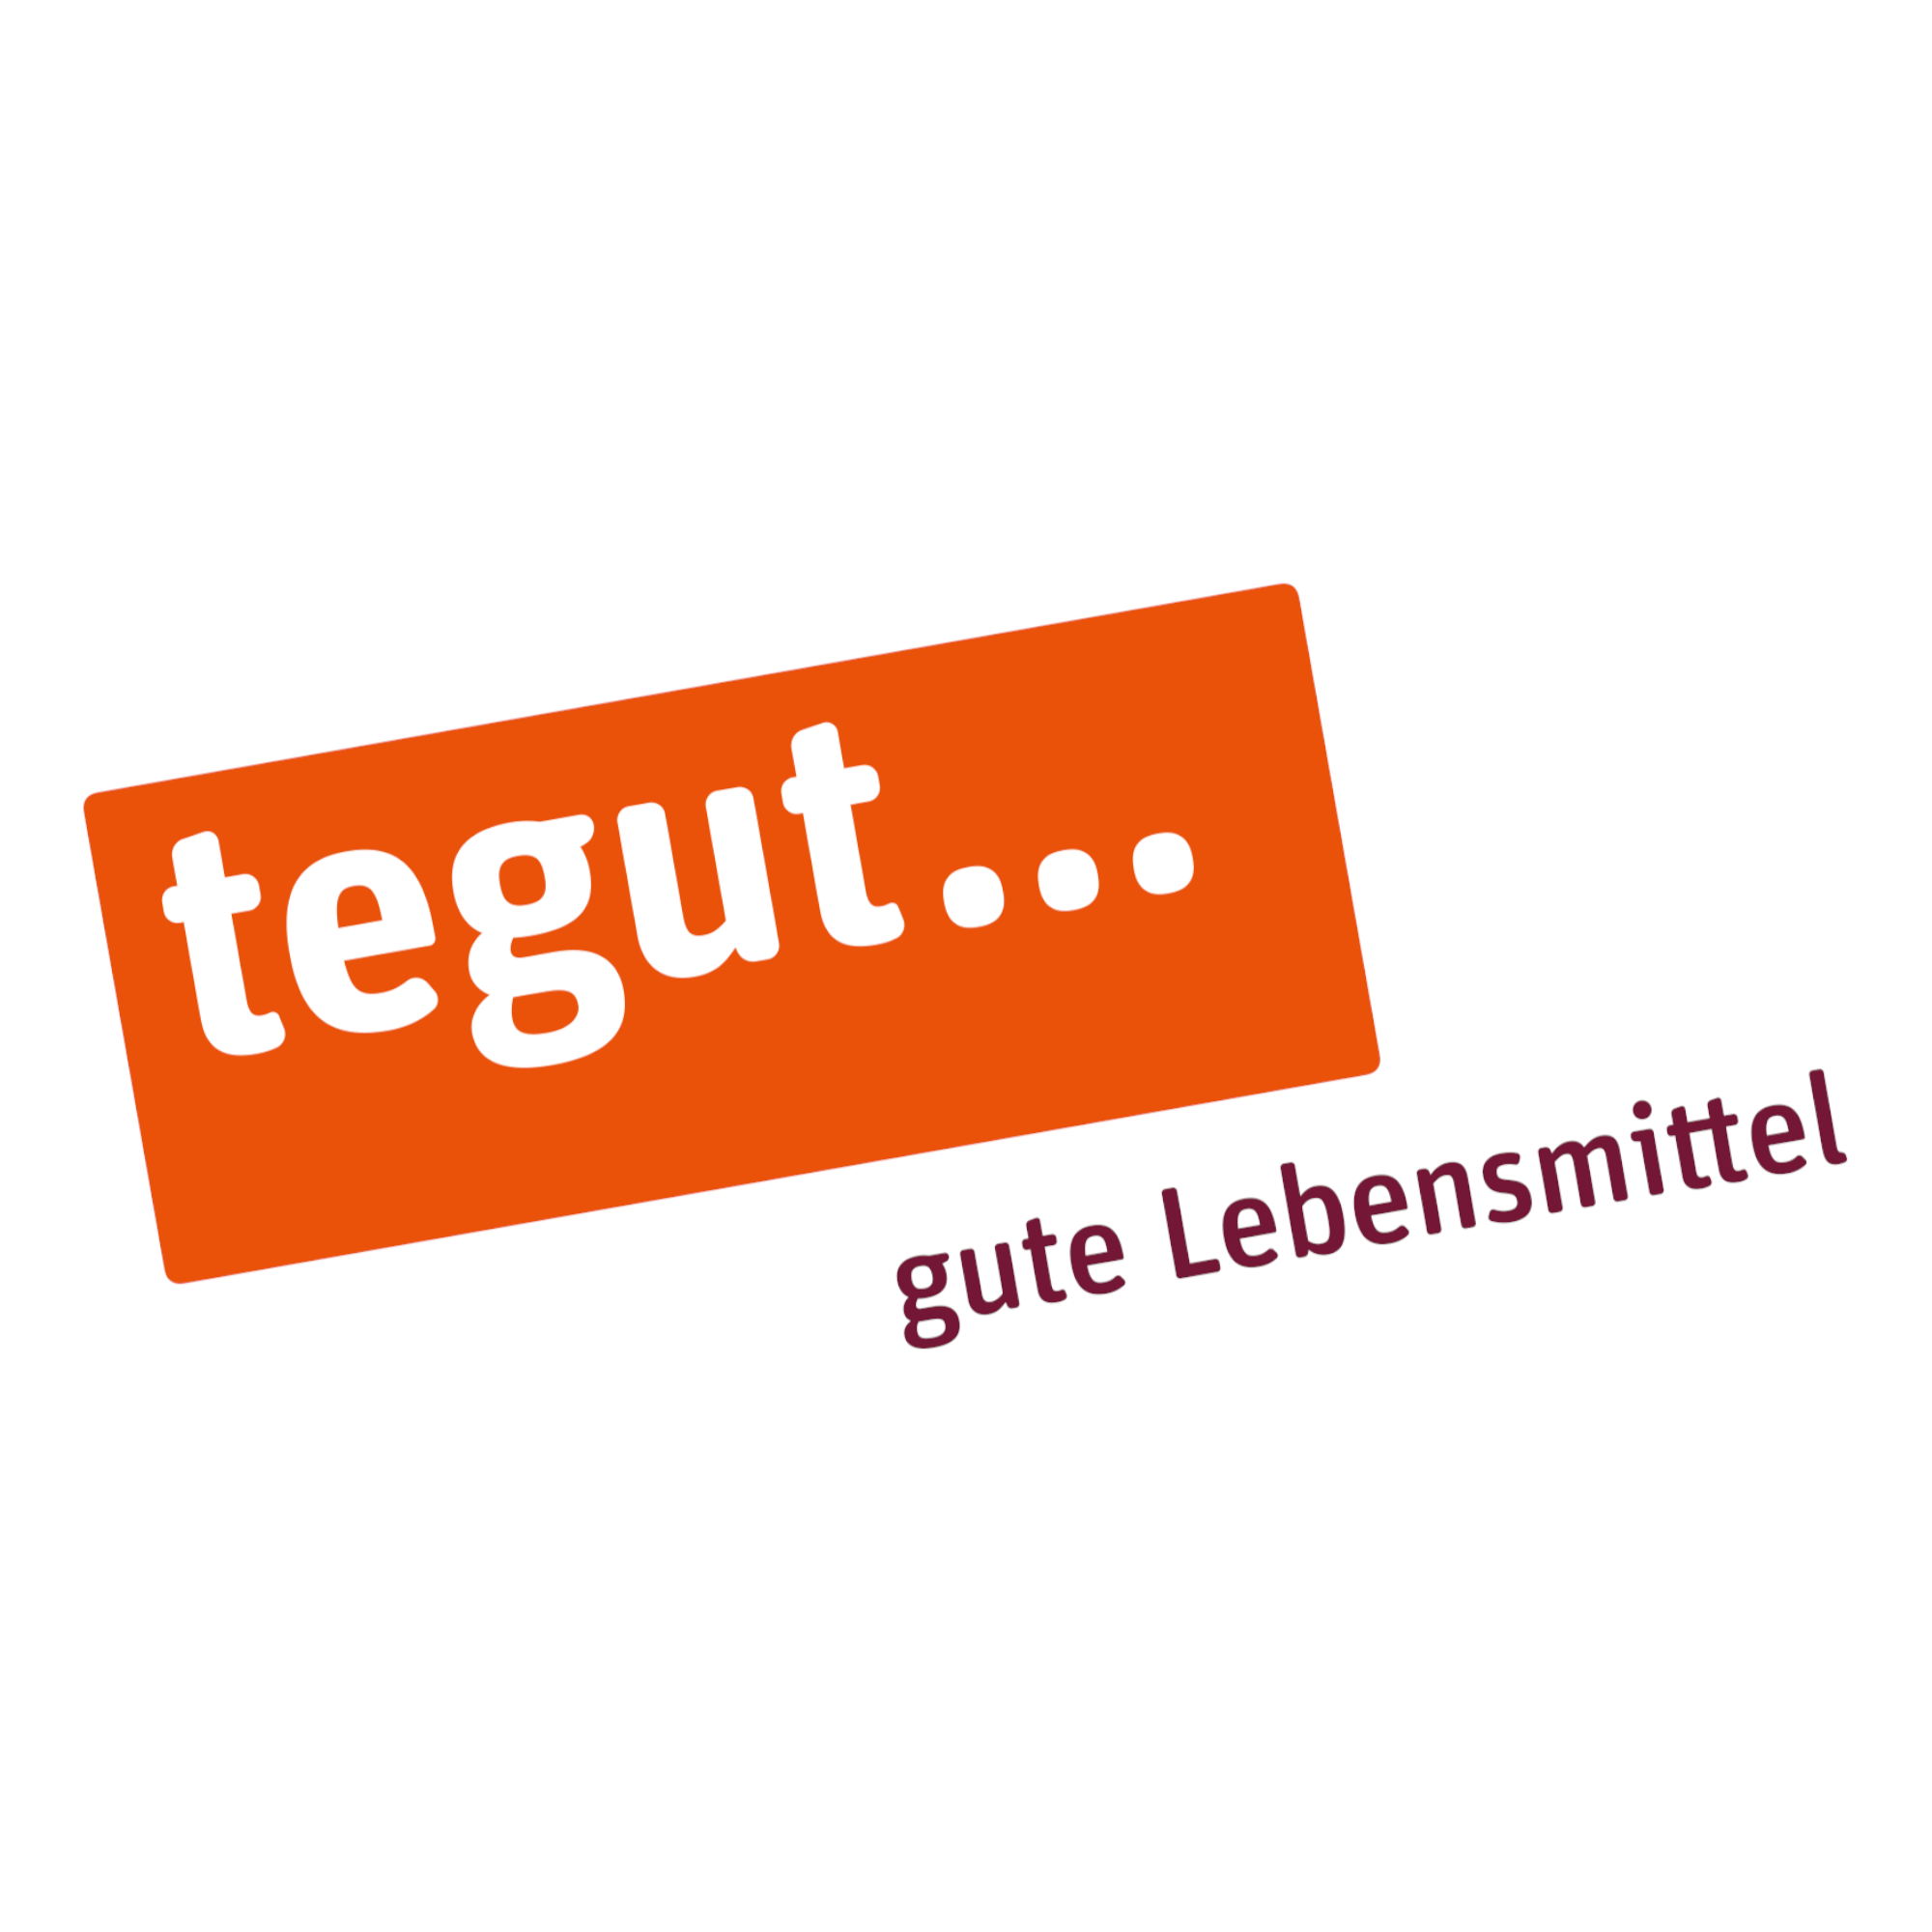 tegut... gute Lebensmittel in Altenstadt in Hessen - Logo